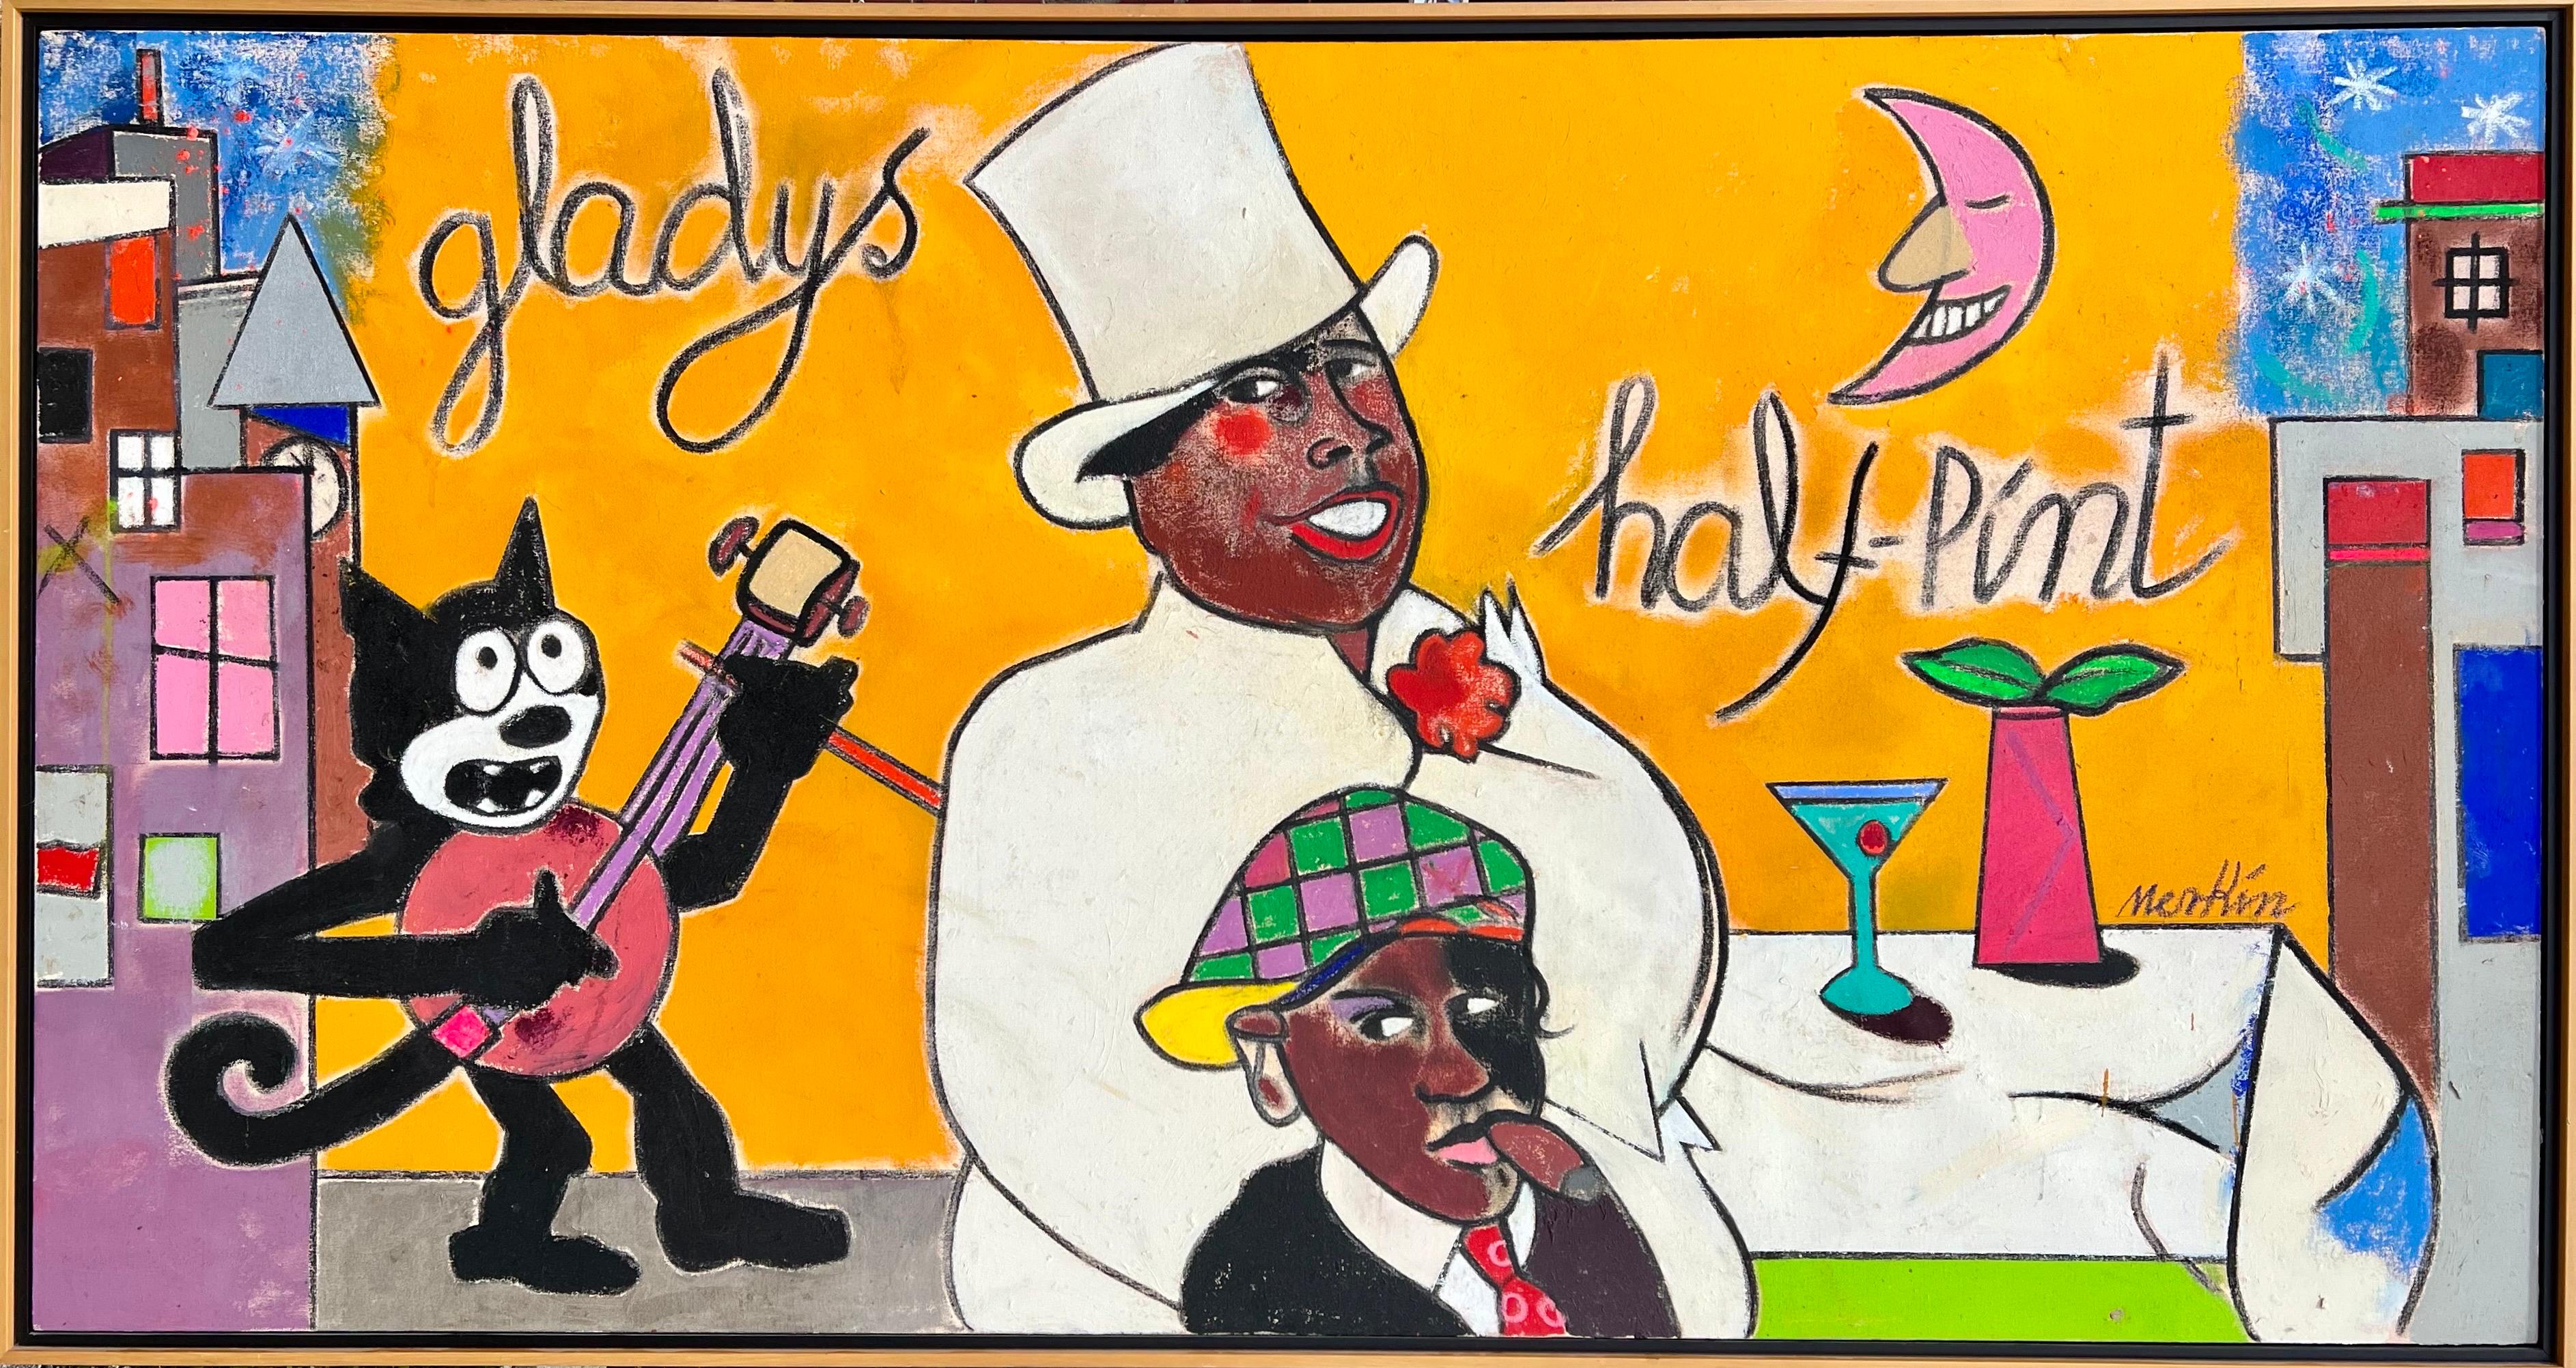 Großes Gemälde von Richard Merkin, Harlem Jazz Club, New Yorker Zeitschriftencoverkünstler